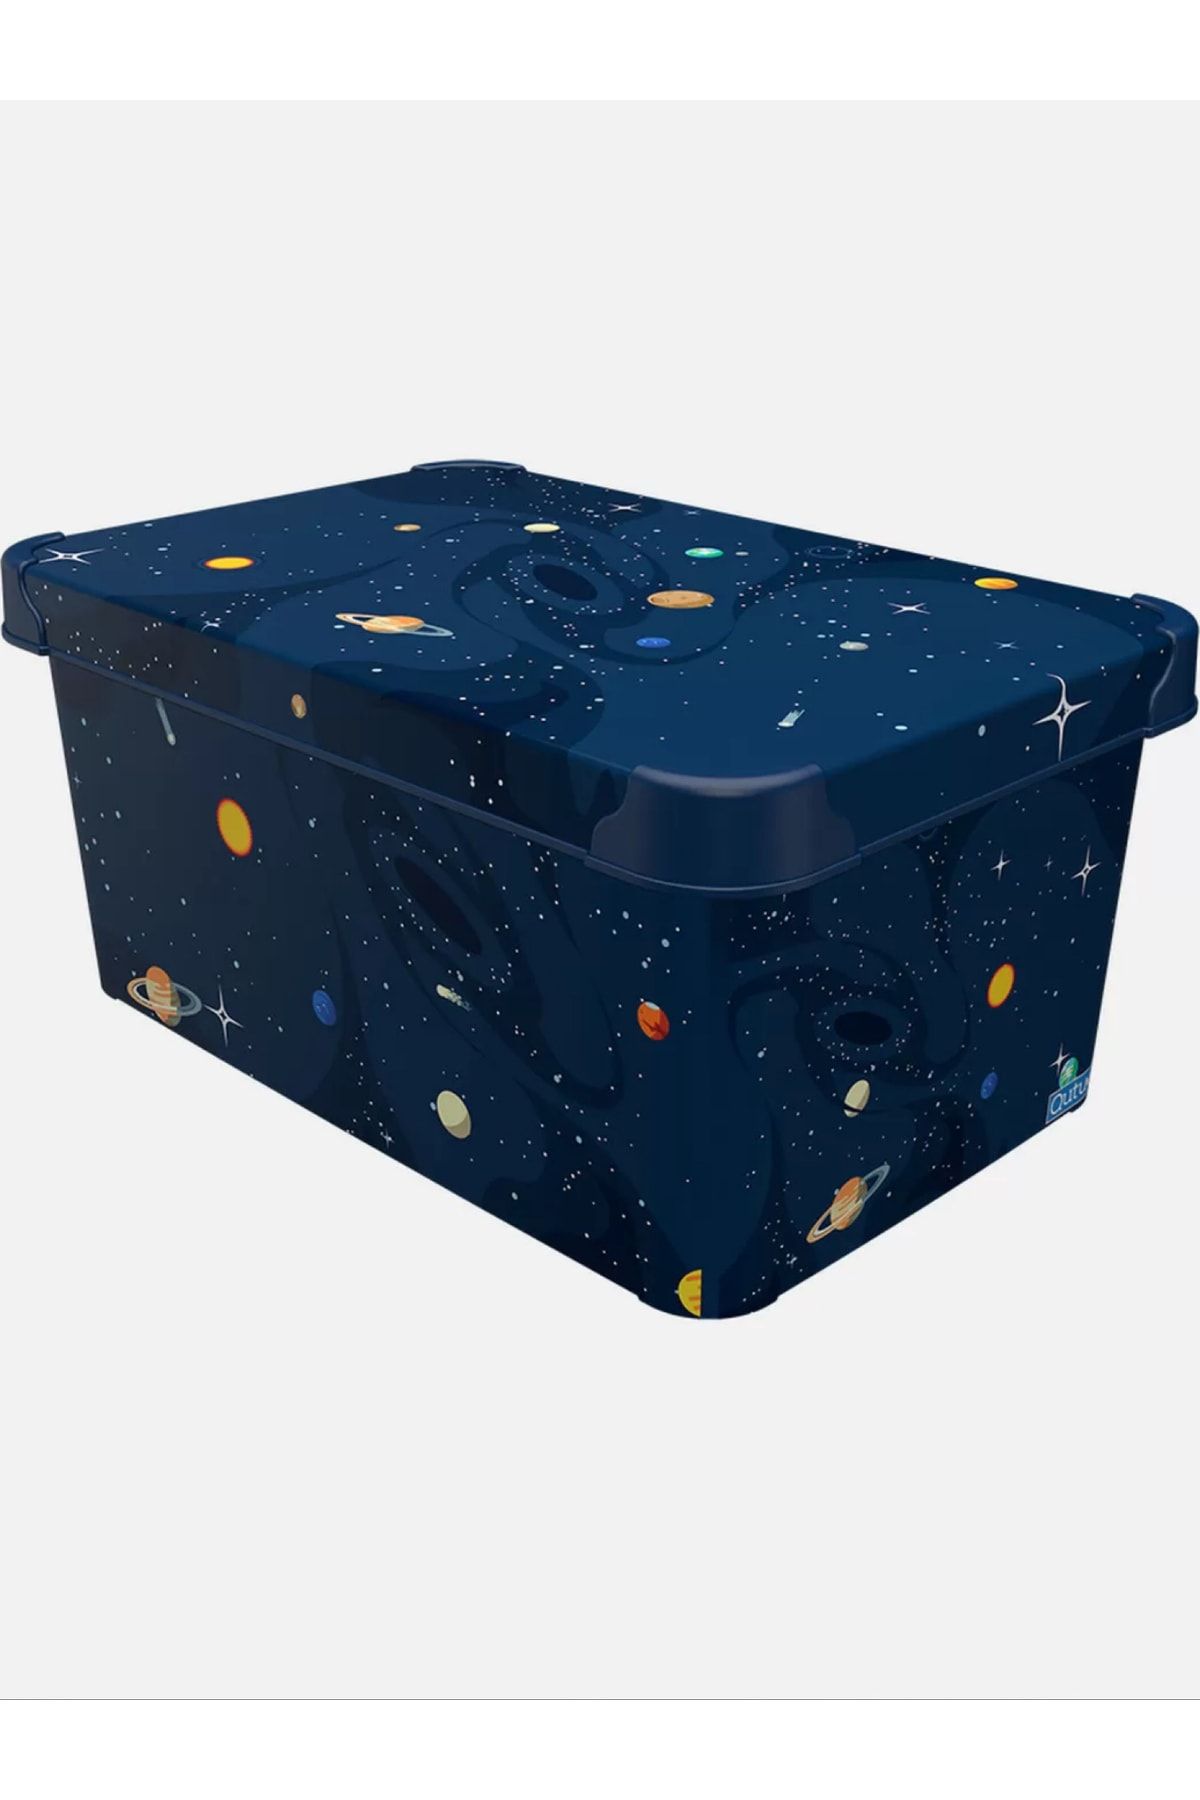 QUTU 10 Lt Planets Gezegenler 34,5x23x16 Kapaklı Saklama Kutusu Style Box Düzenleyici Dekoratif Kutu